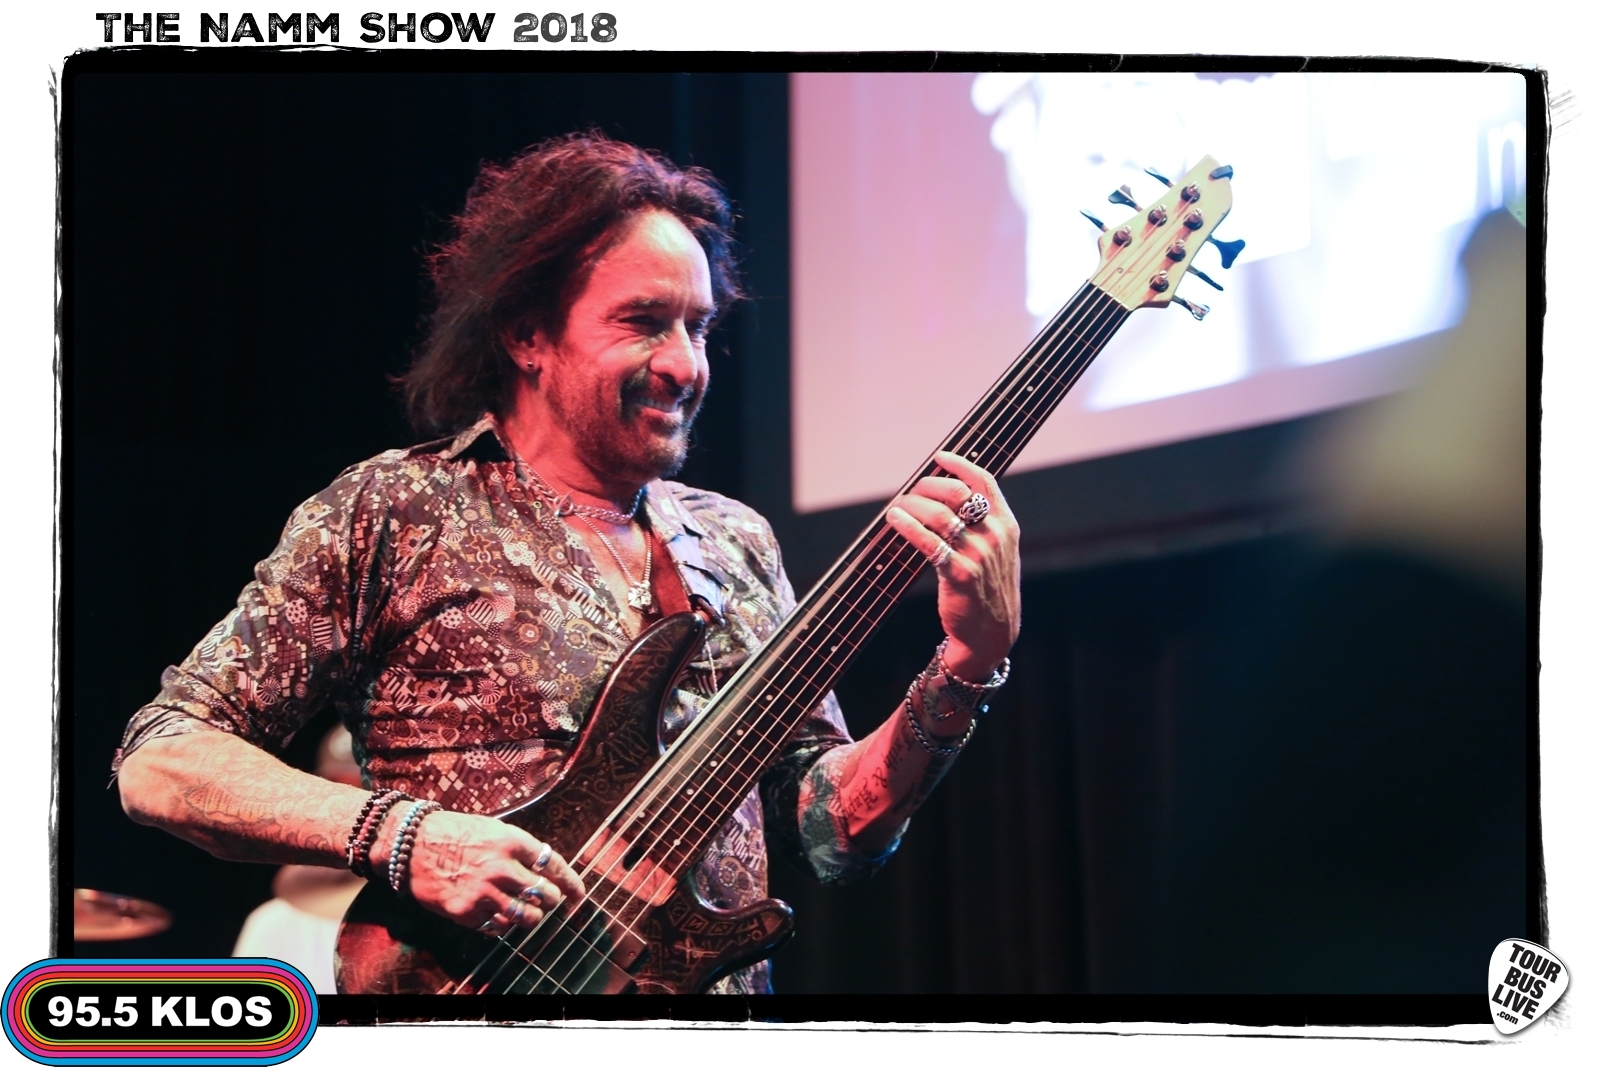 The NAMM Show, Anaheim Convention Center, CA., 1/25/18. © 2018 TourBusLive.com